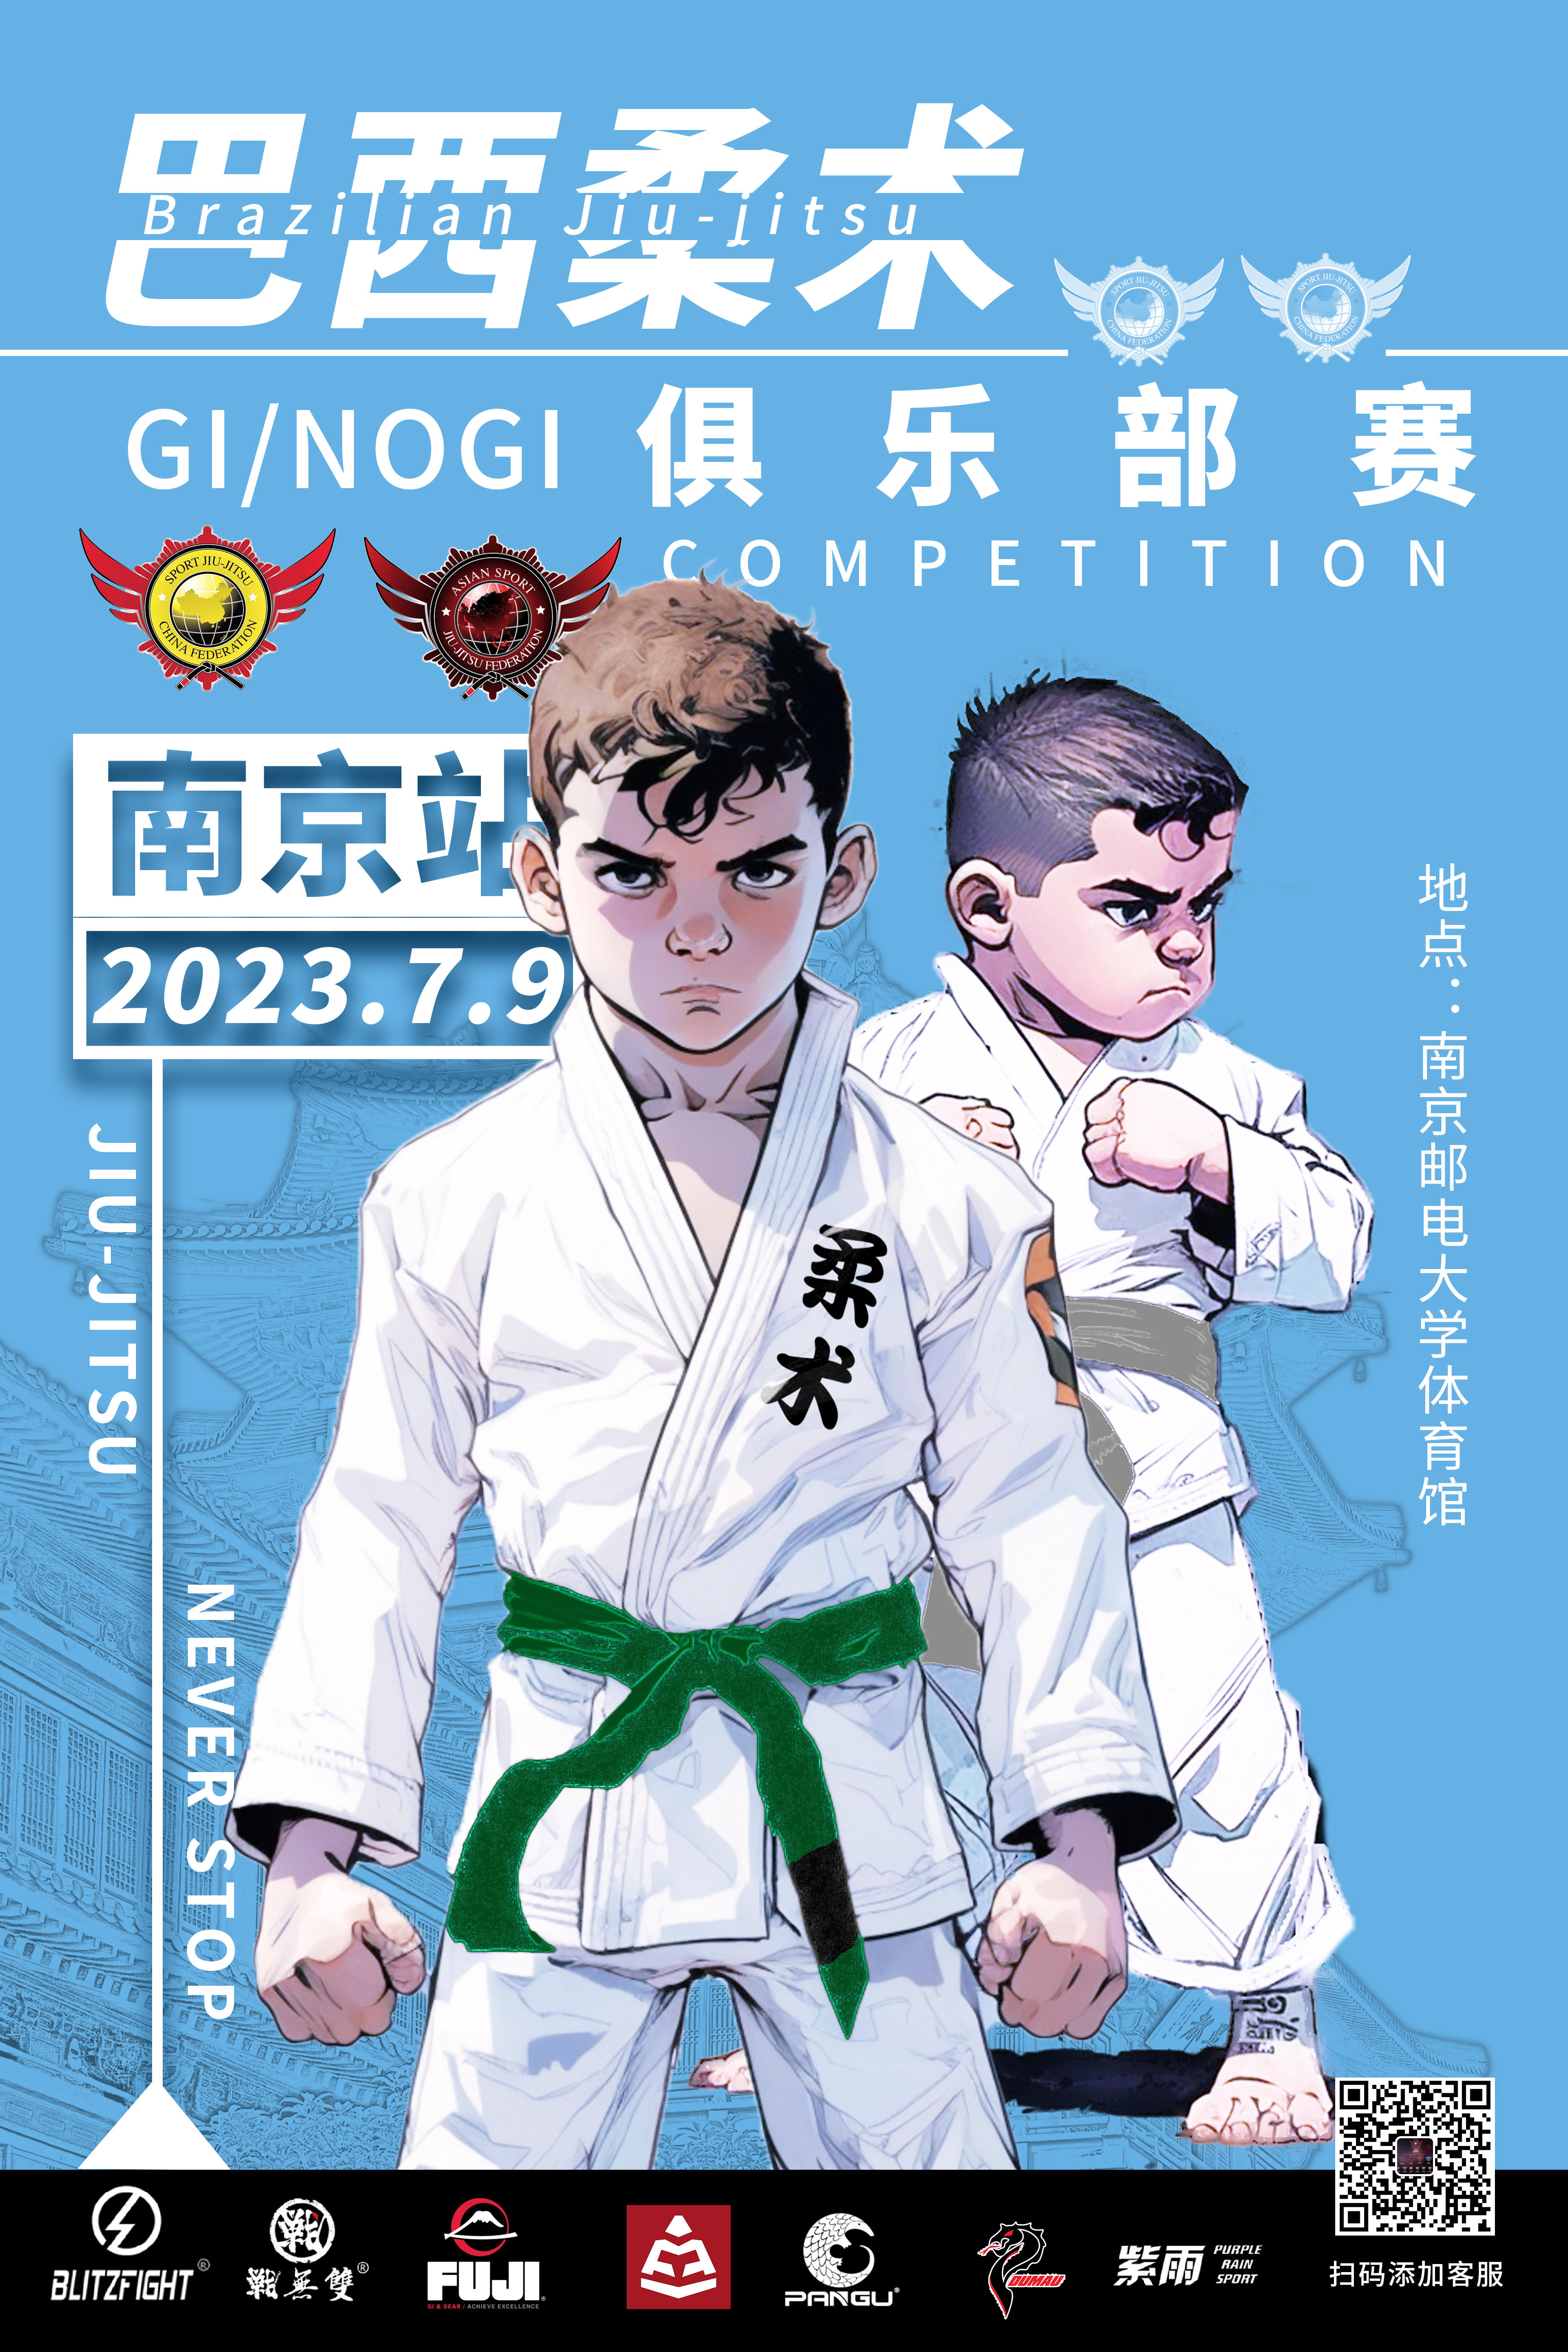 Sjjcf Nanjing Jiu Jitsu Championship 2023